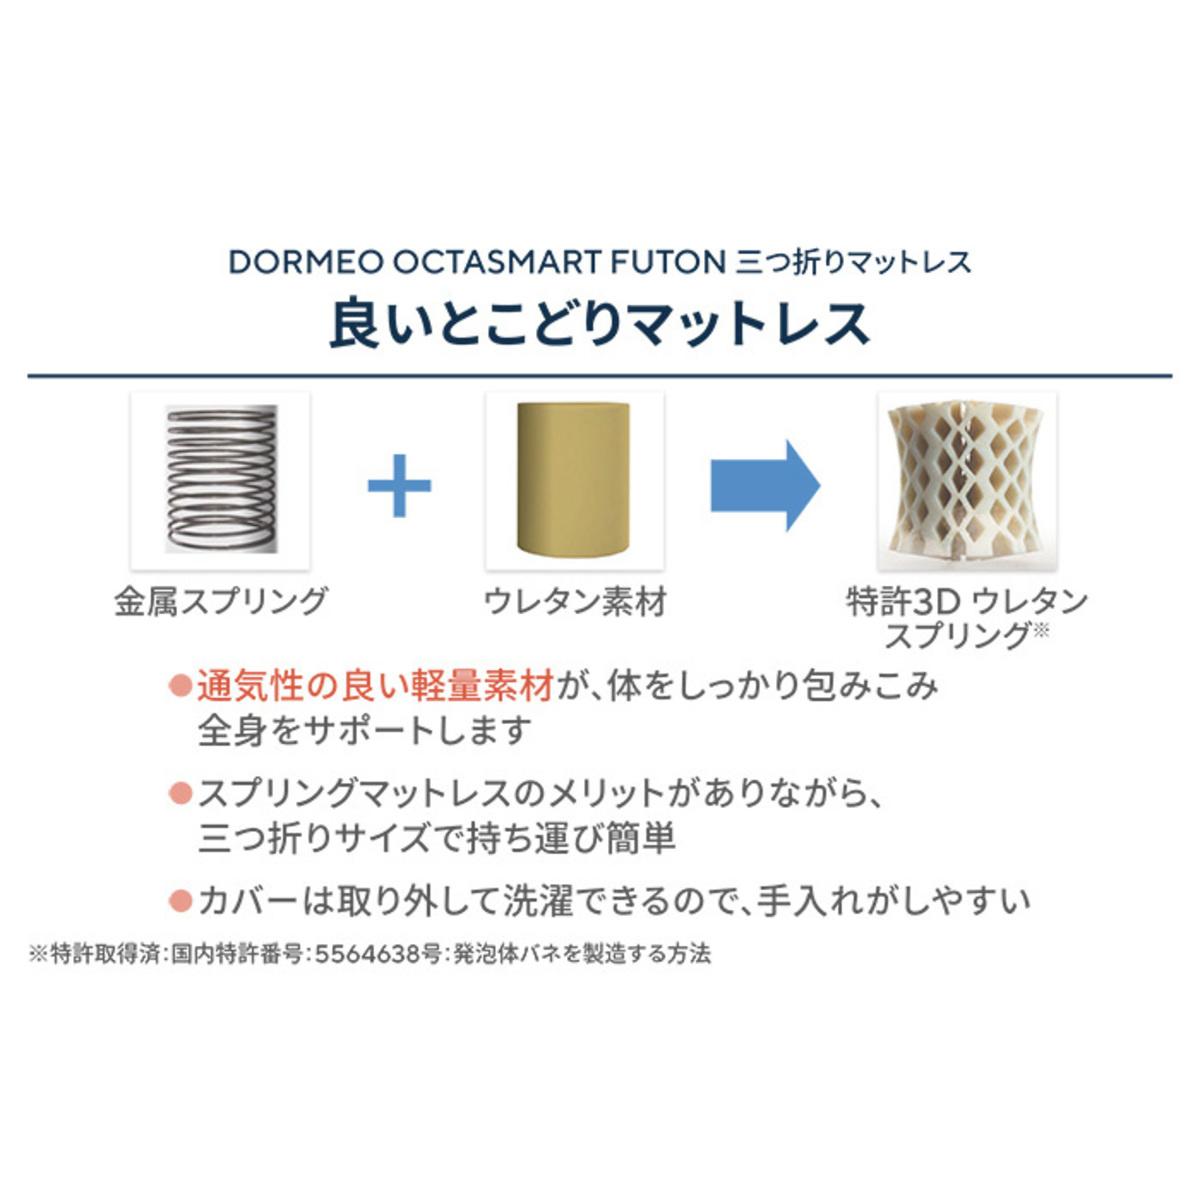 DORMEO Futon 三つ折りマットレス シングル - QVC.jp